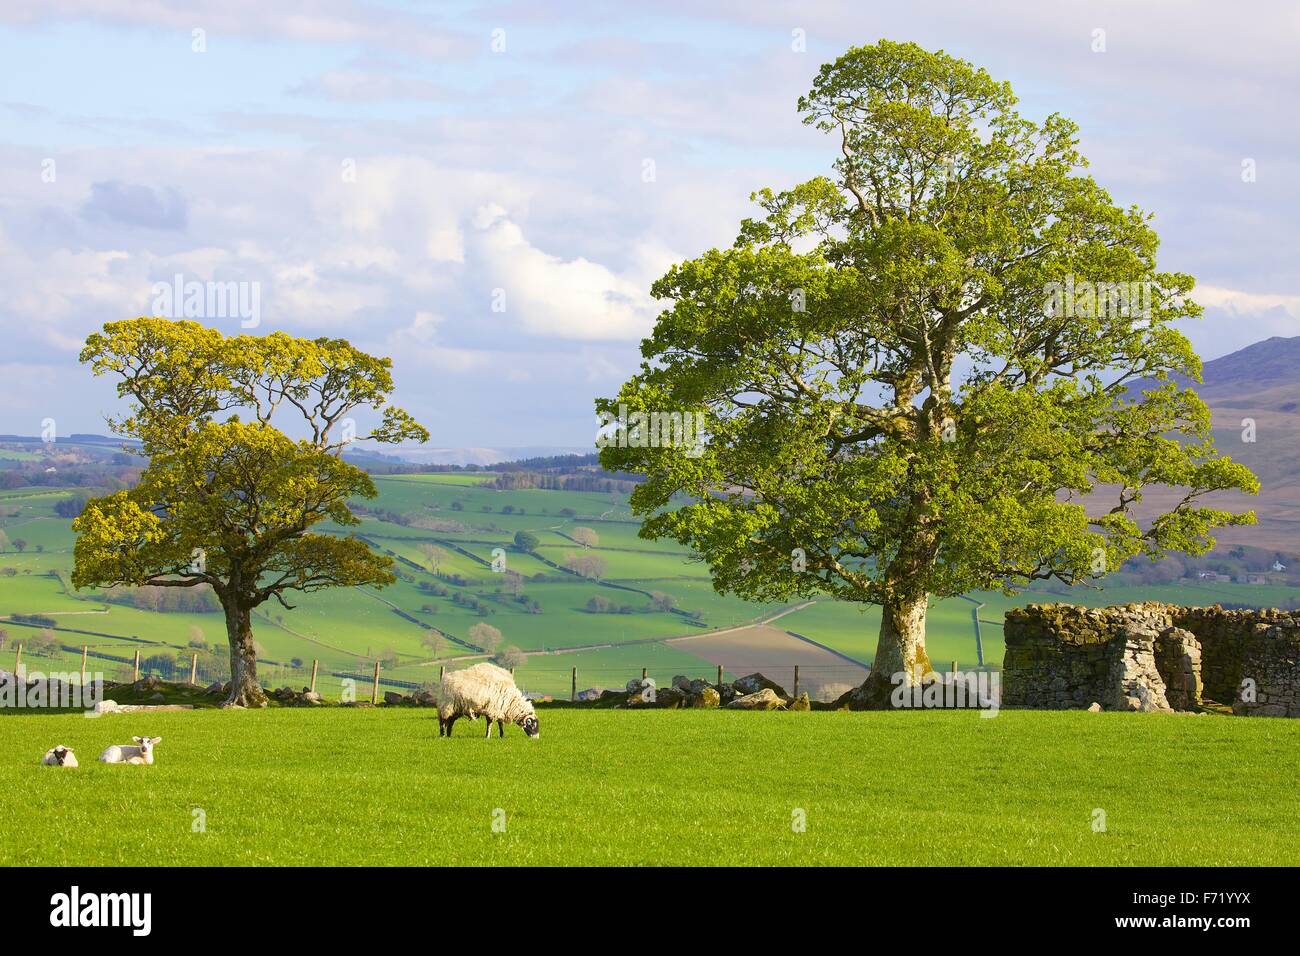 Le Parc National de Lake District. Arbre avec feuilles de printemps et les brebis avec agneaux dans domaine en muret de pierres sèches. Warnell tomba, Cumbria. Banque D'Images